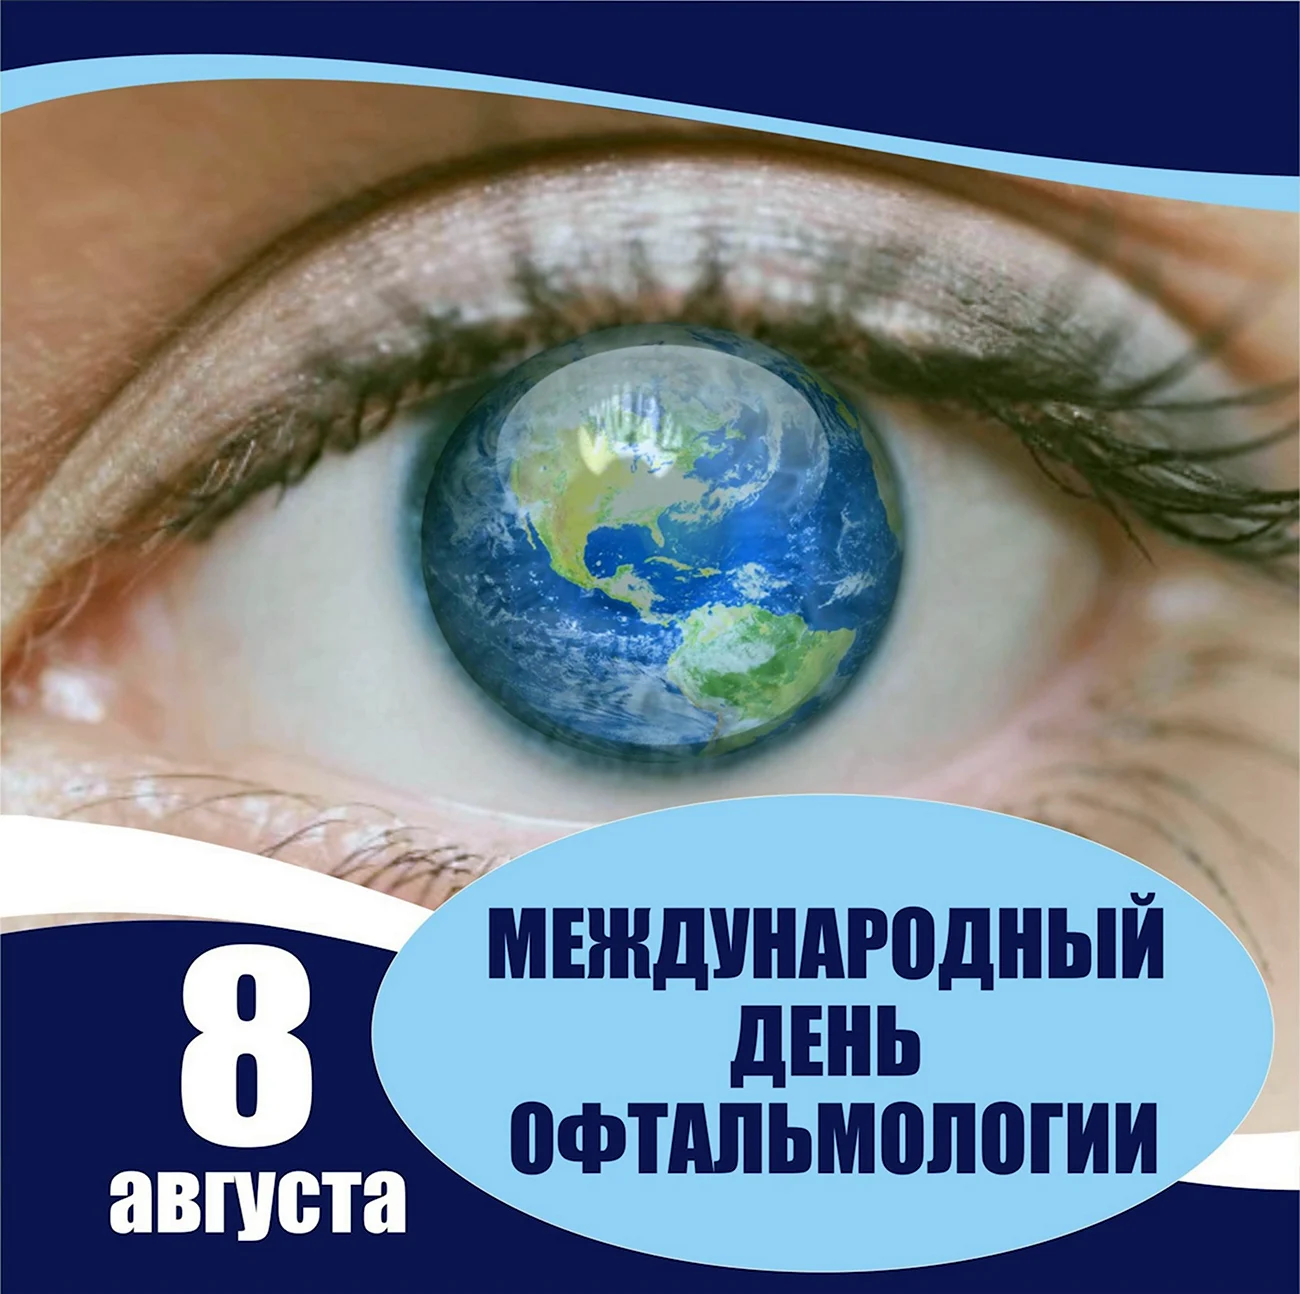 Международный день офтальмологии. Поздравление